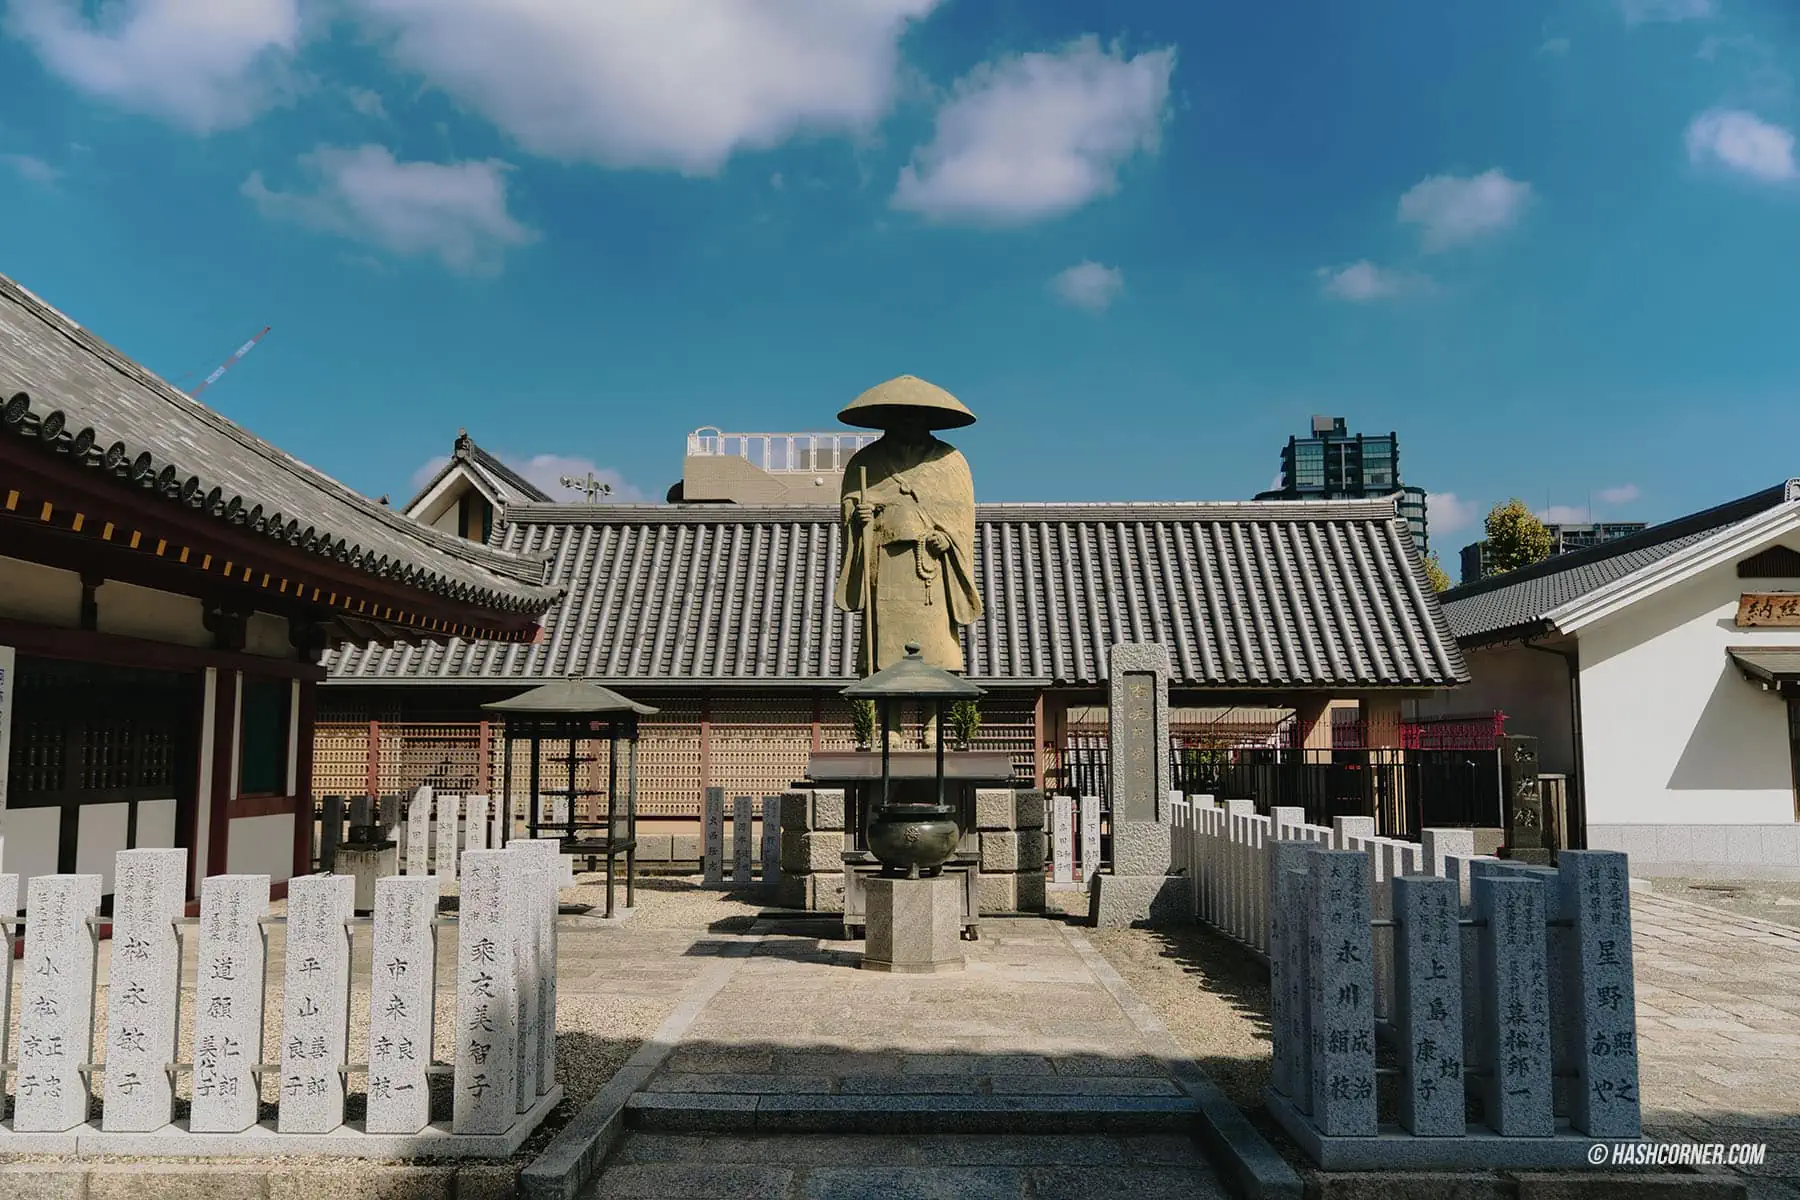 รีวิว วัดชิเทนโนจิ (Shitennoji Temple) x โอซาก้า วัดเก่าแก่ 1,400 ปี แห่งเมืองโอซาก้า